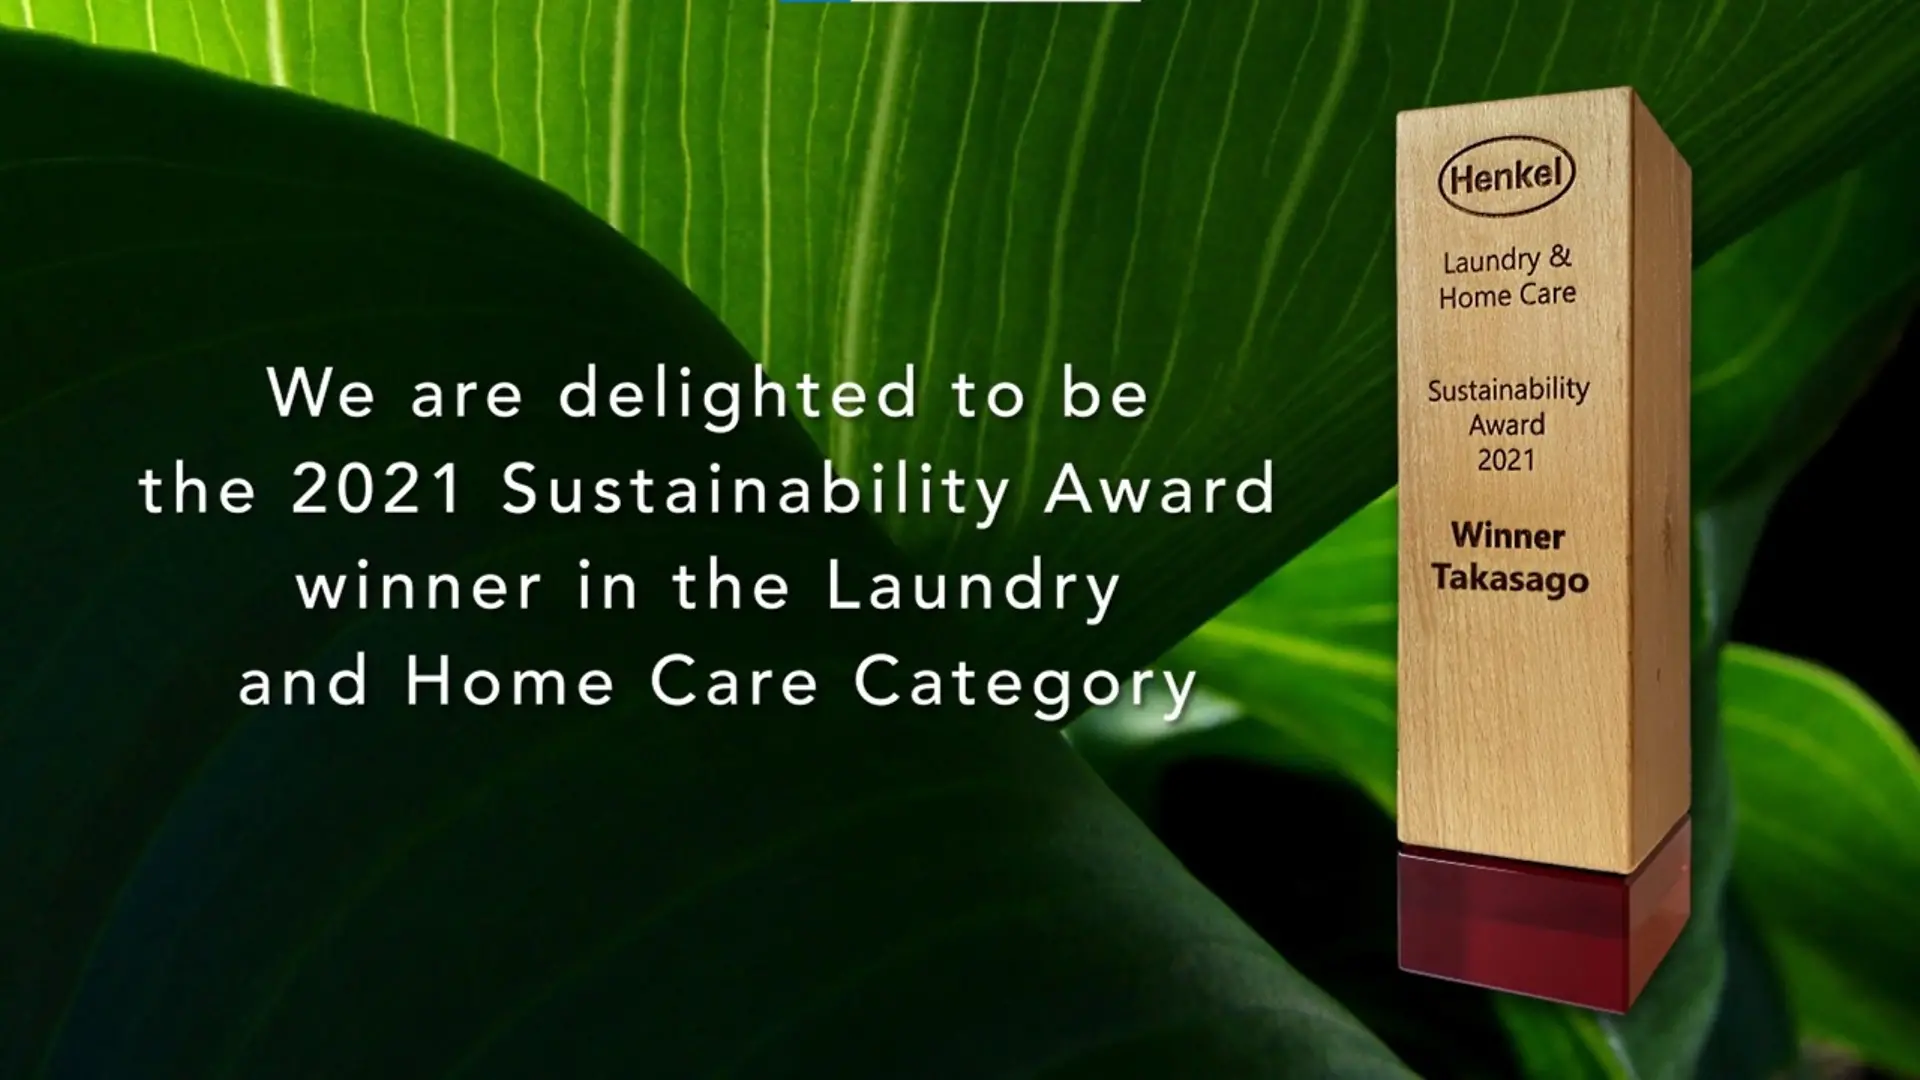 
Takasago erhält den ersten Platz für den „Sustainability Award“ von Laundry & Home Care.